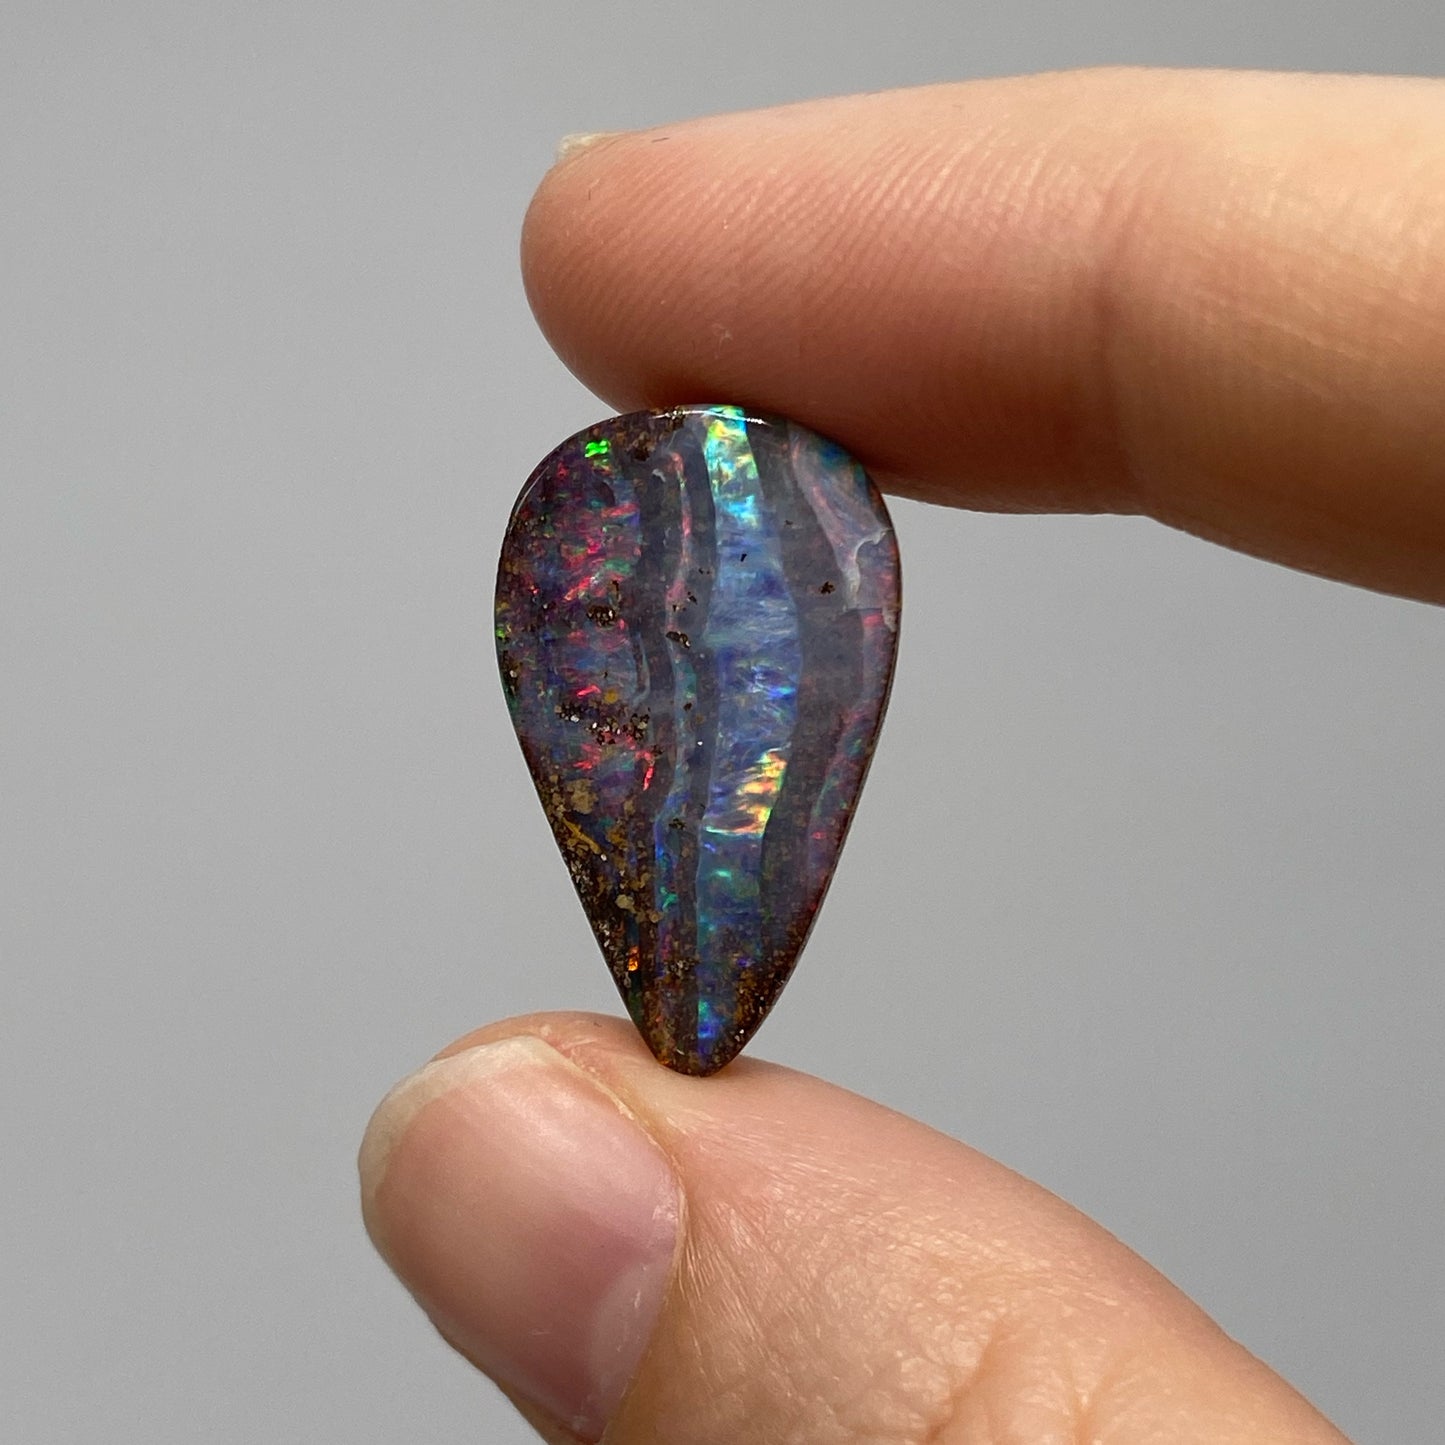 9.70 Ct teardrop boulder opal